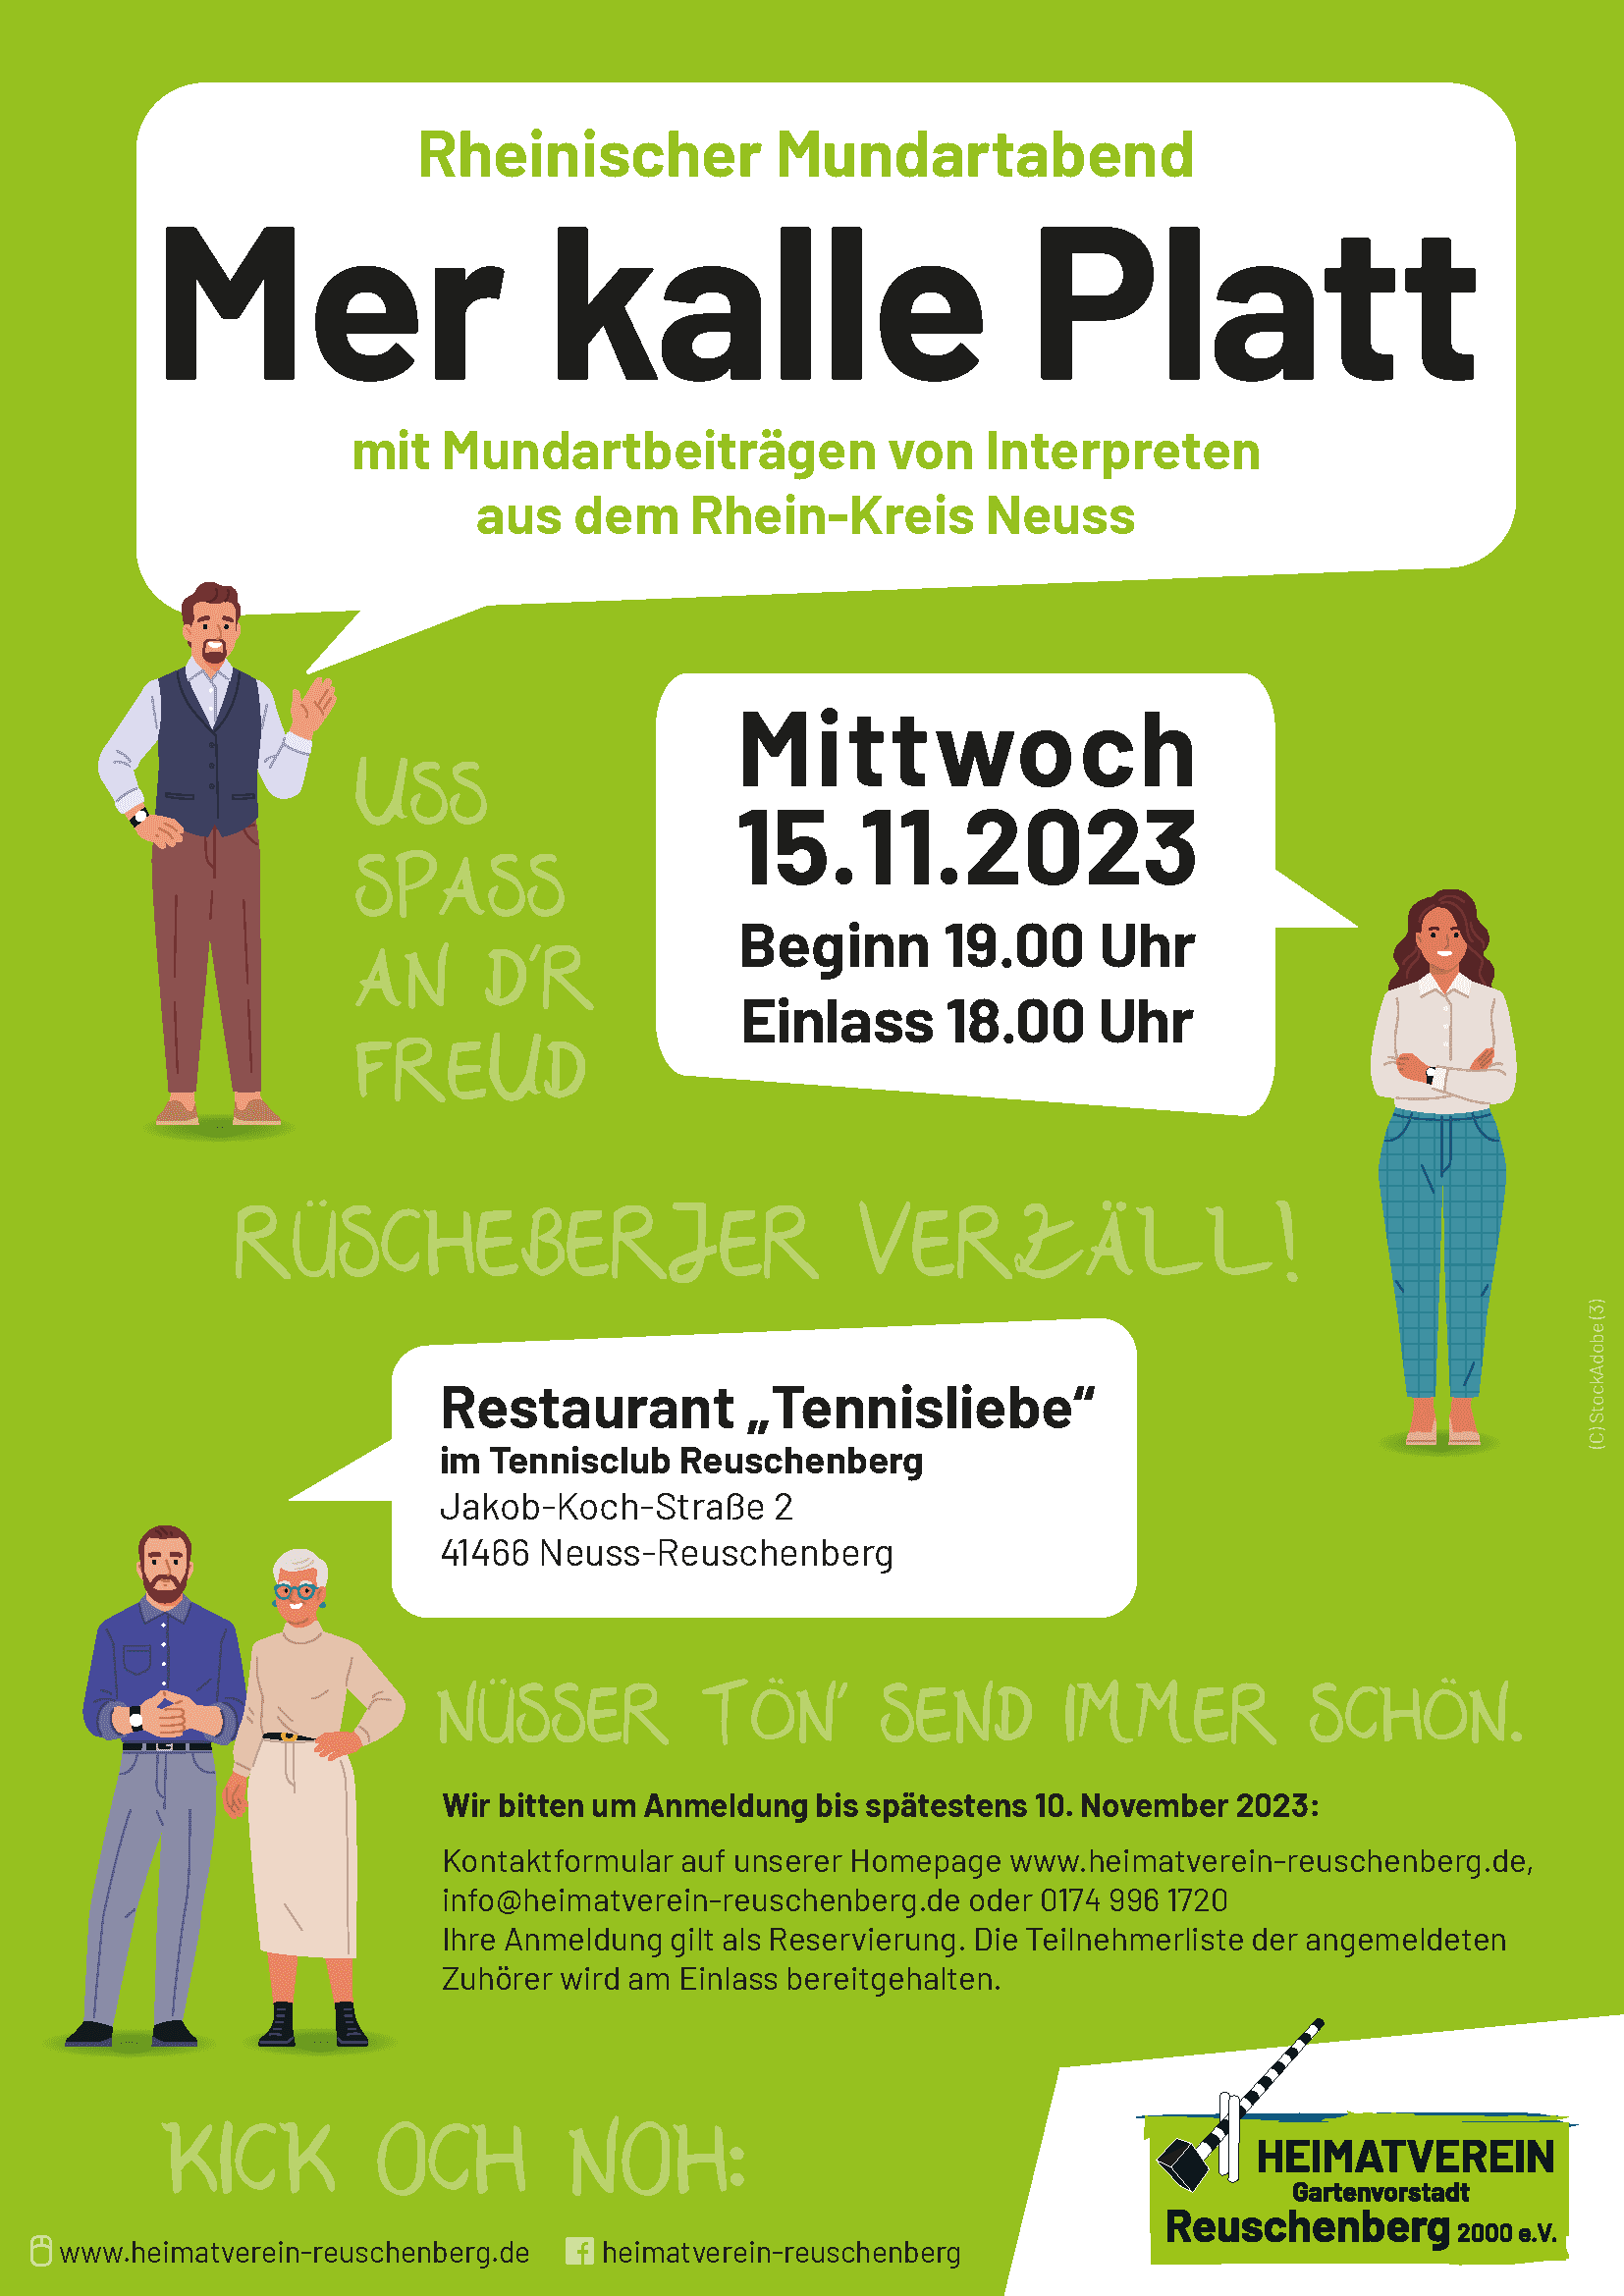 Mer Kalle Plattn - Rheinischer Mundartabend am 15.11.2023